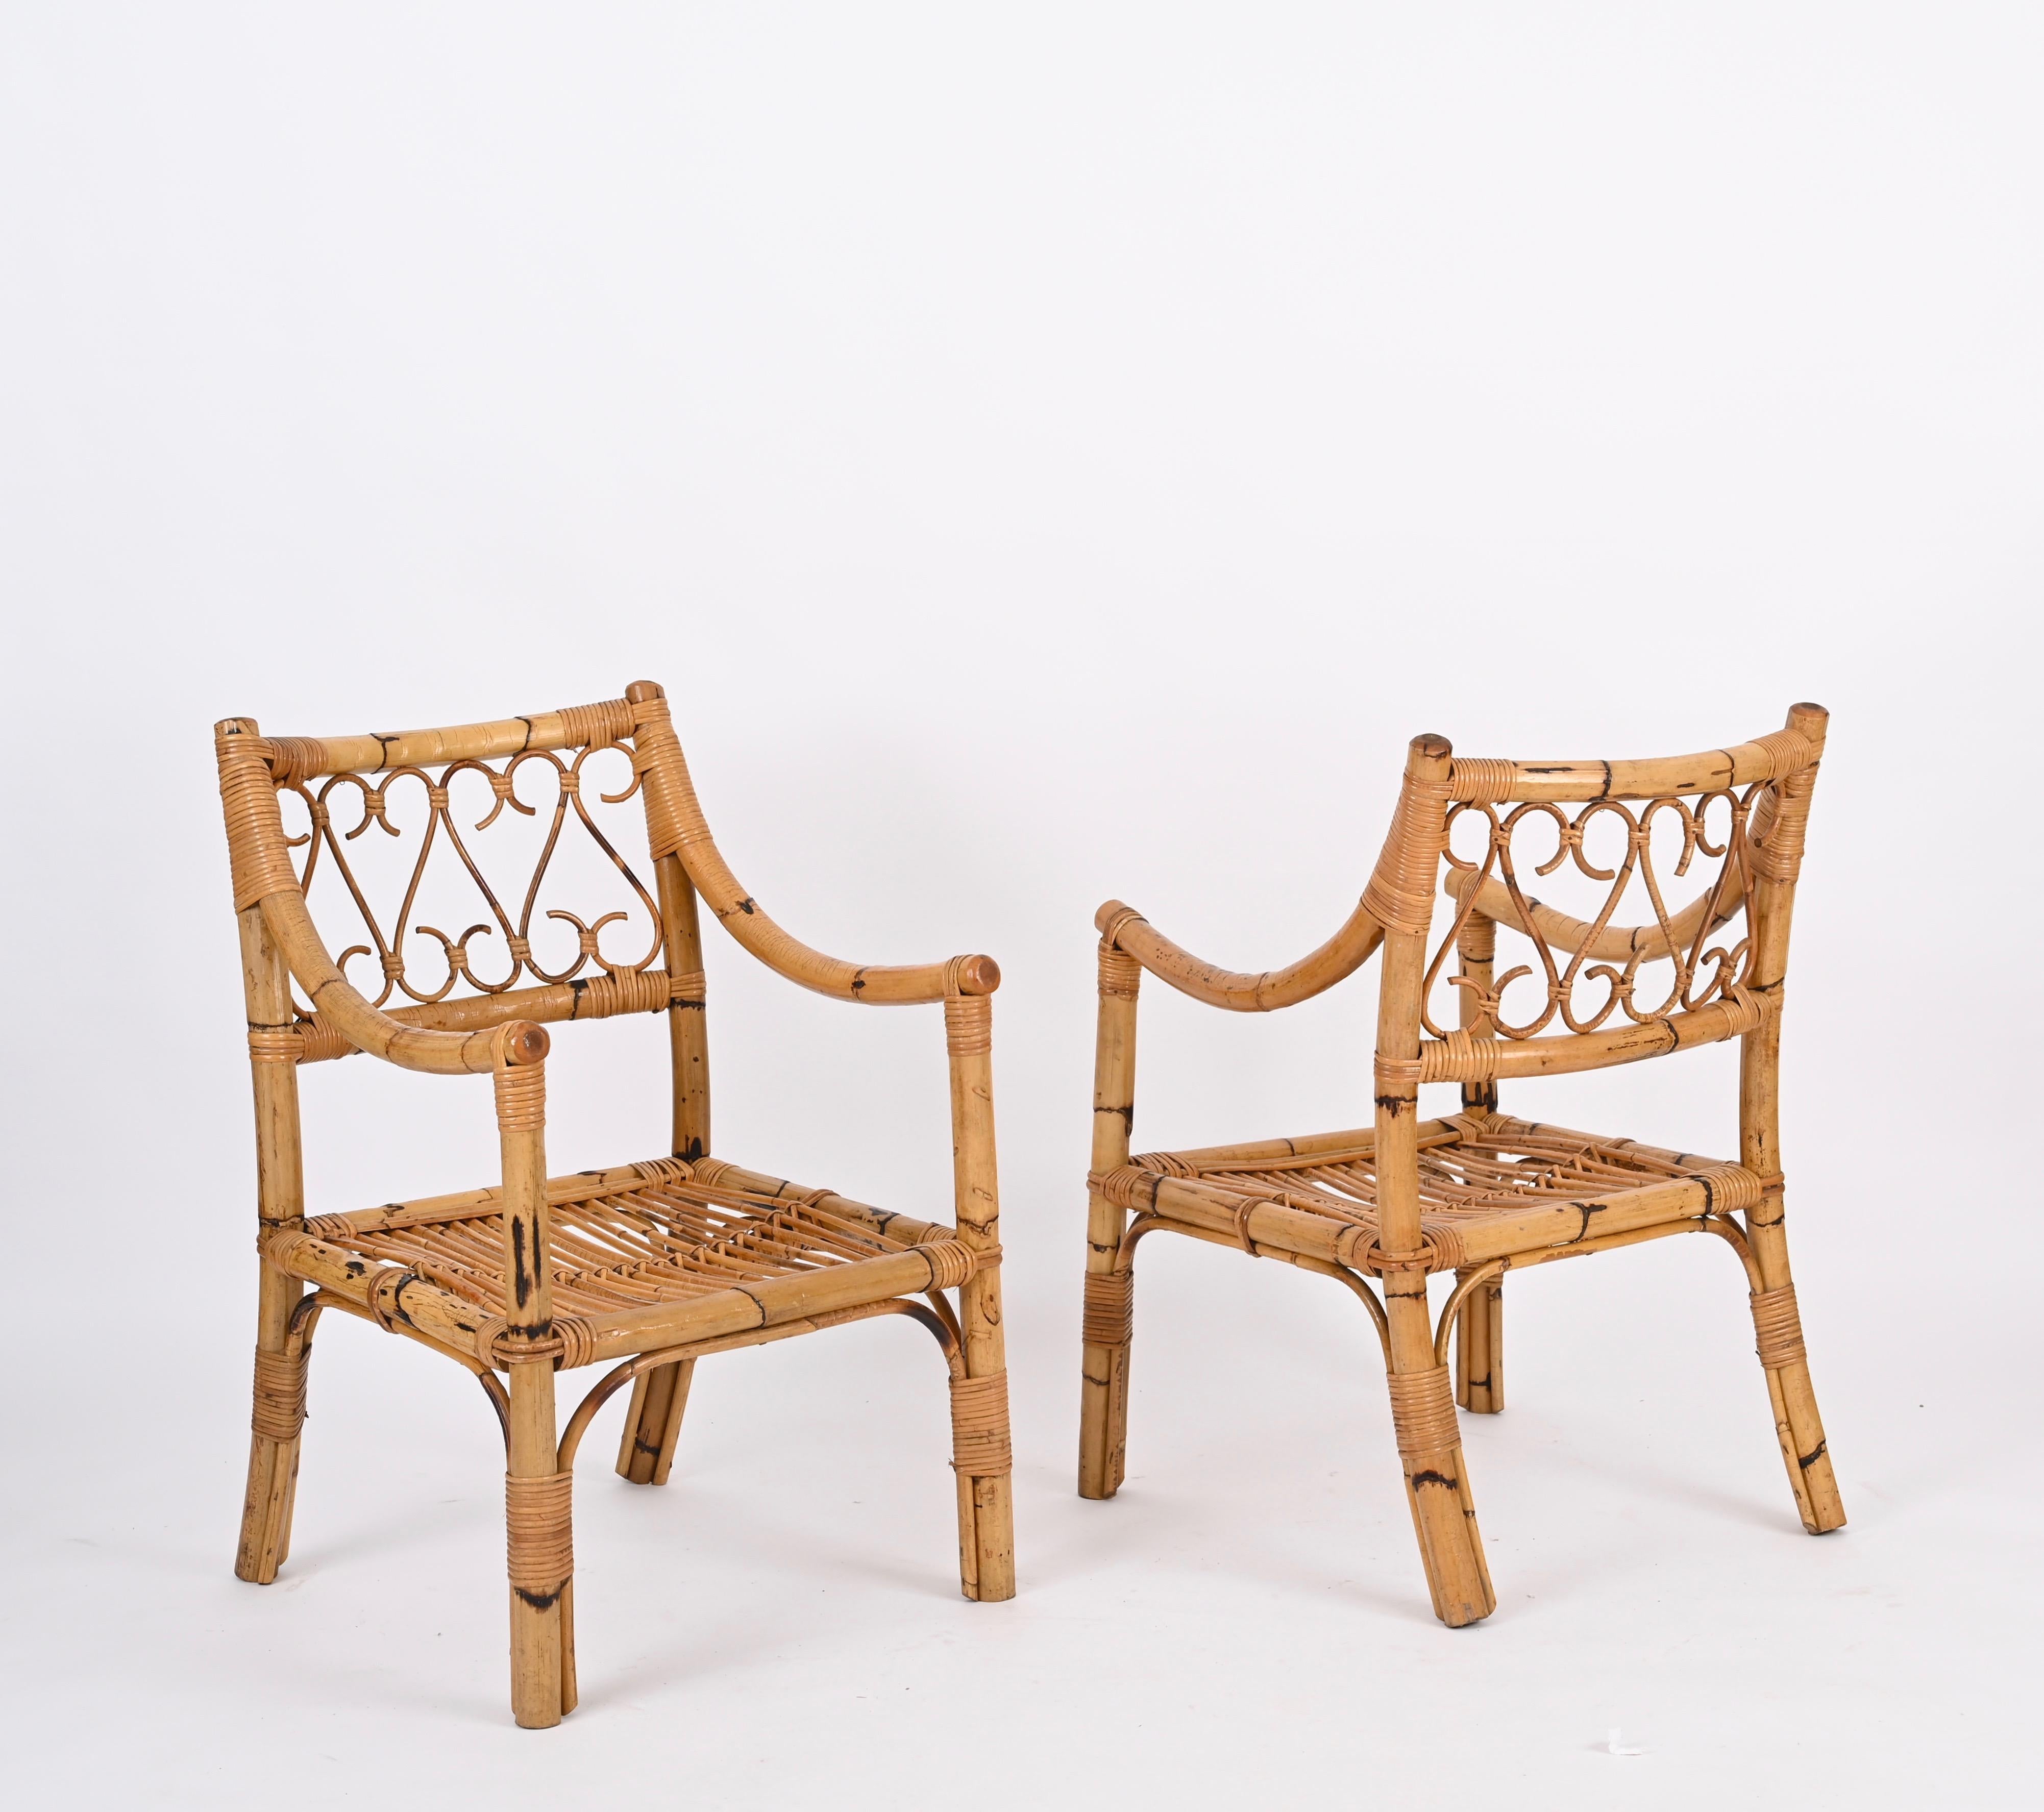 Paire de fantastiques fauteuils Mid-Century entièrement réalisés en bambou, rotin et osier. Cet incroyable ensemble a été produit en Italie par Vivai del Sud dans les années 1970.

Ces fauteuils confortables ont une structure en bambou robuste et